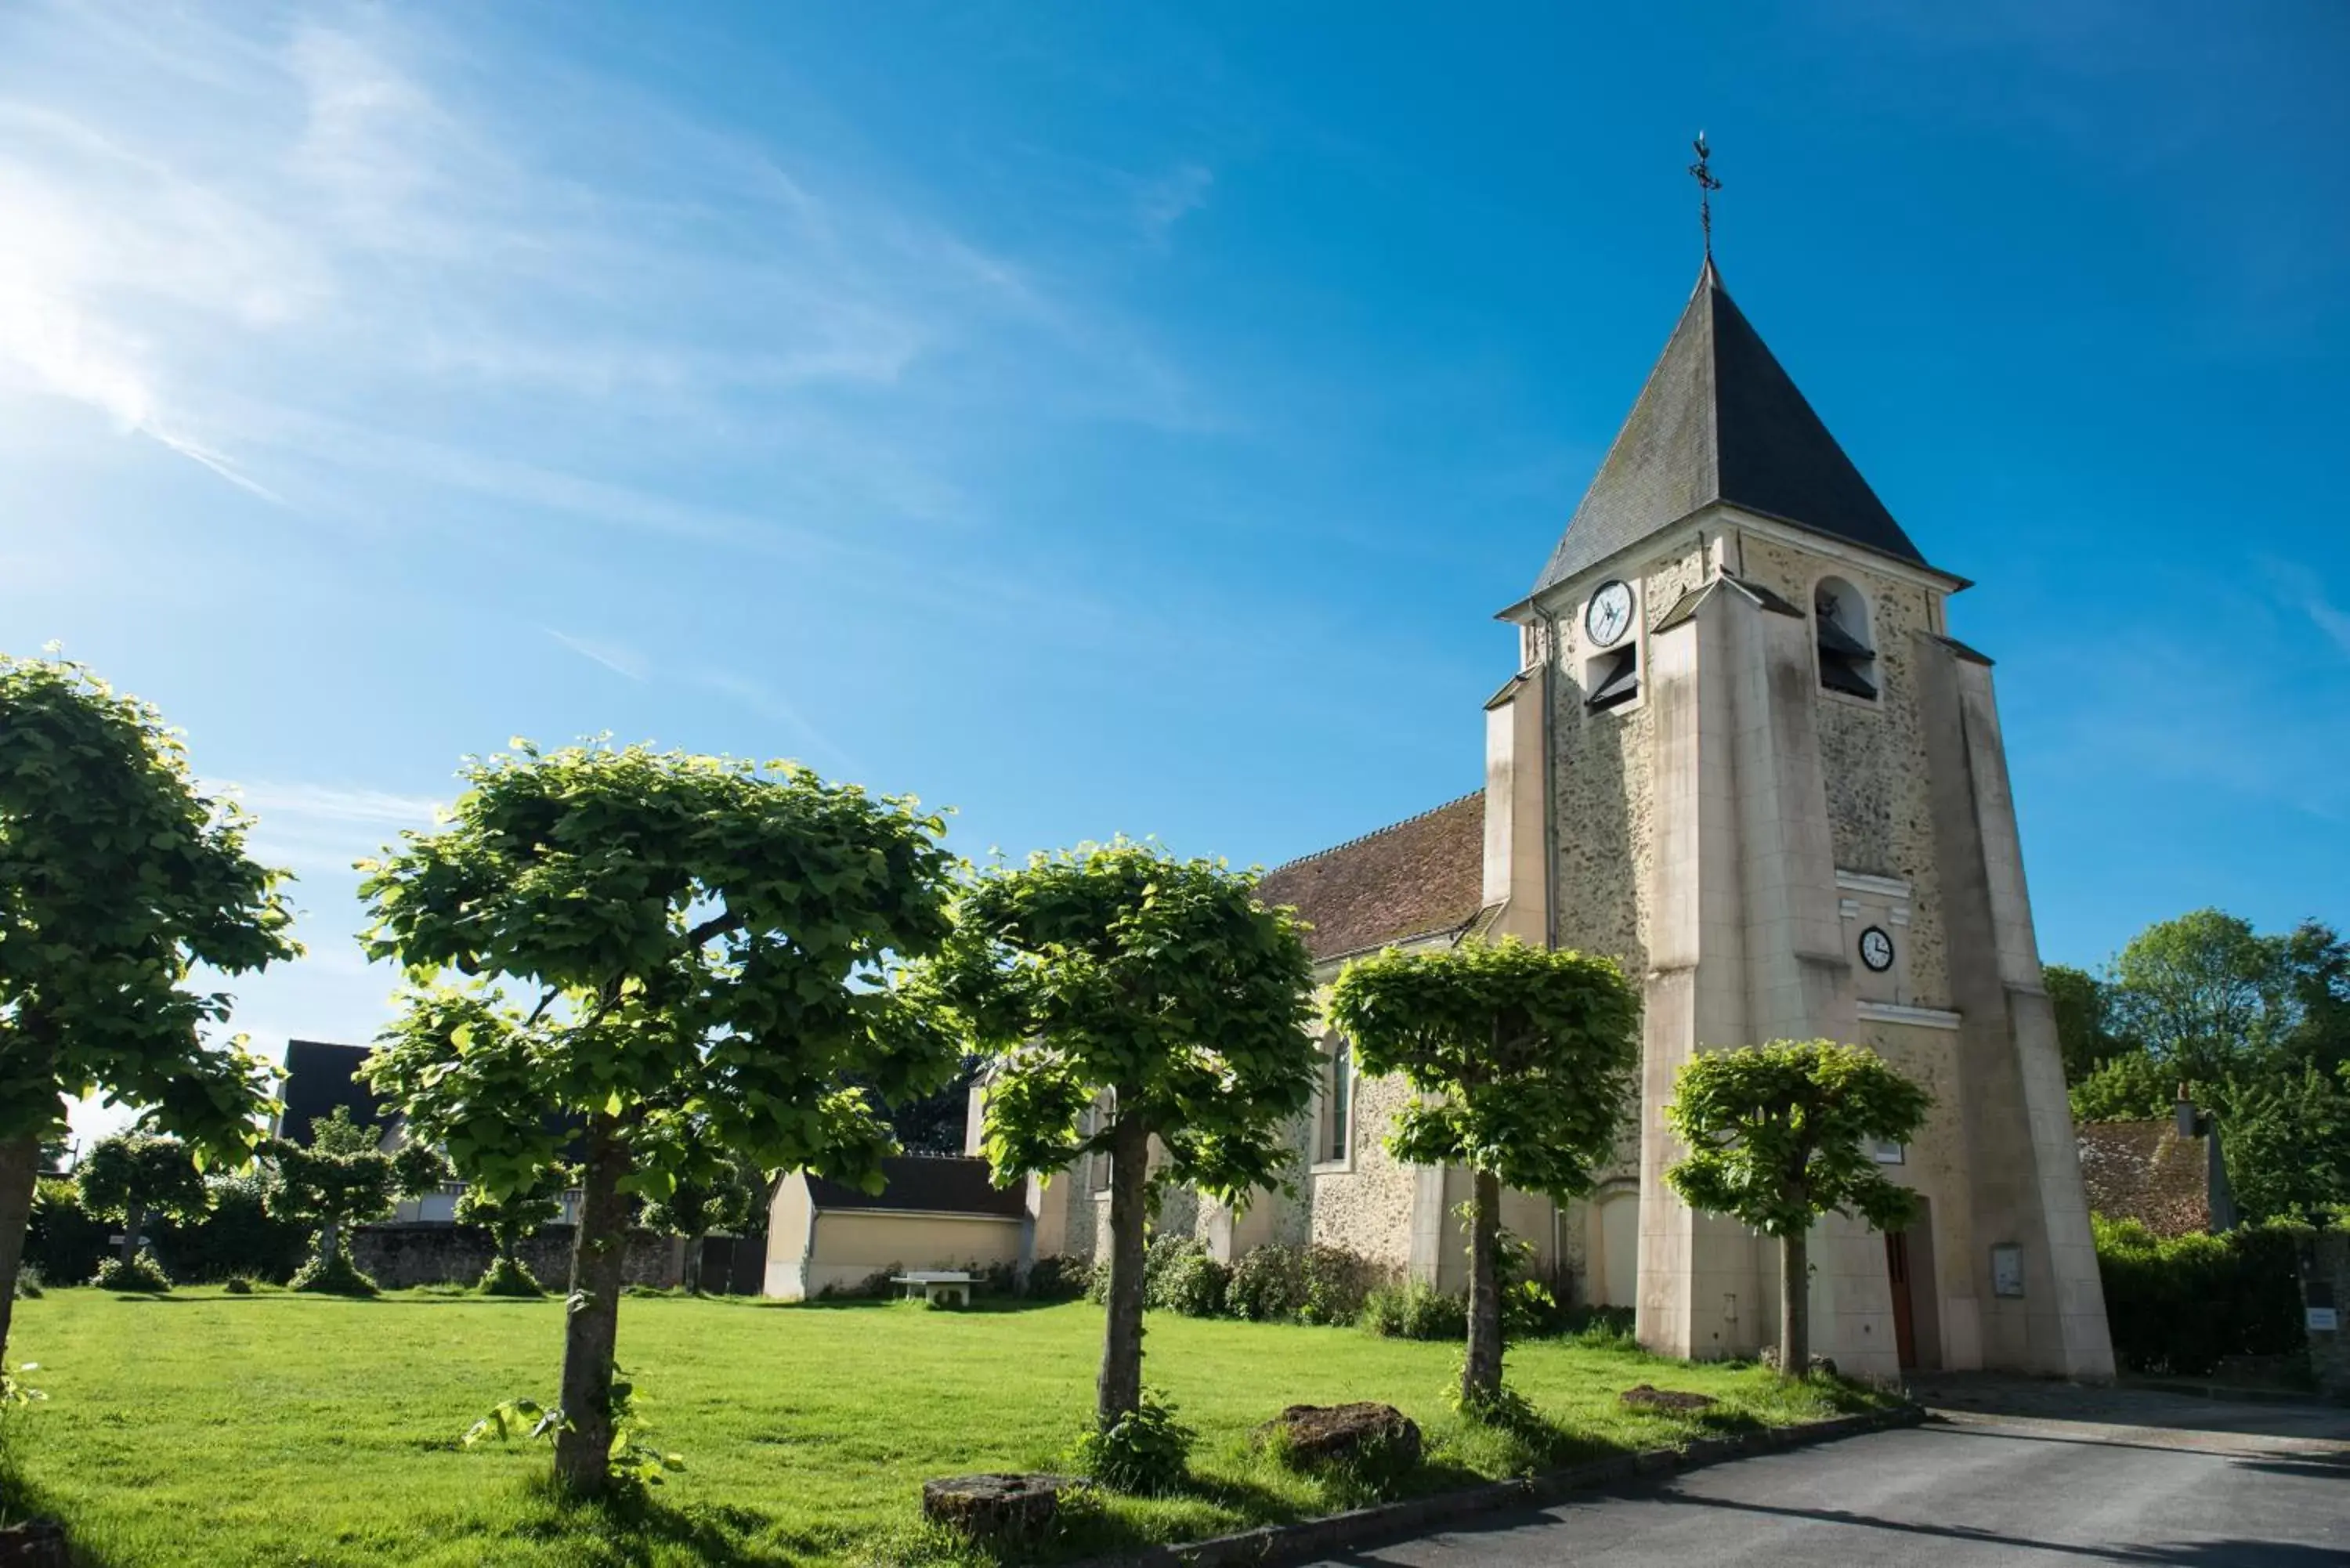 Place of worship in Château de Sancy